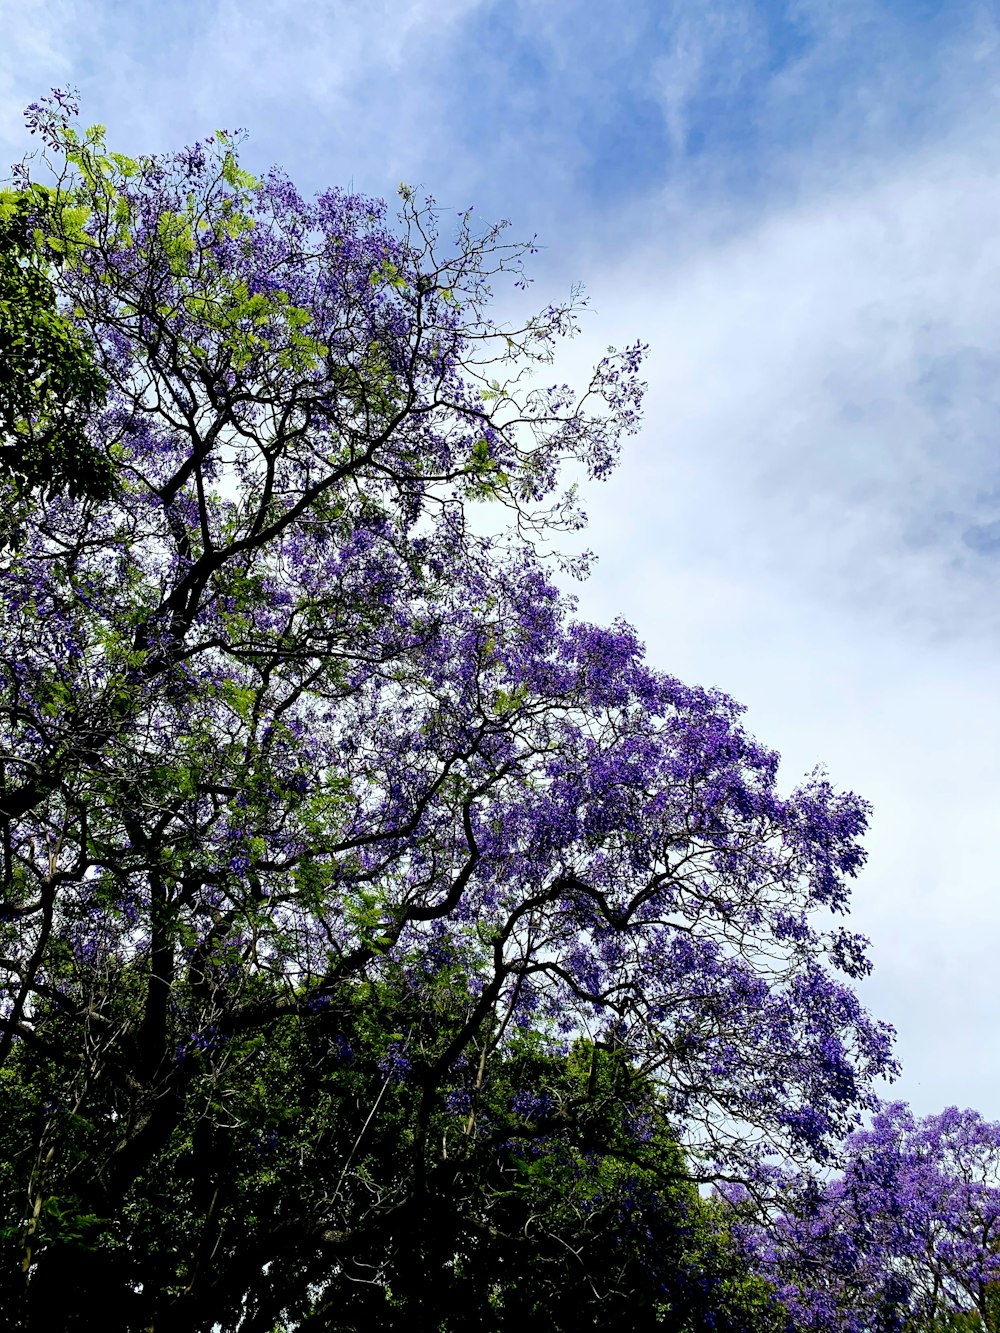 flores púrpuras y blancas bajo el cielo azul